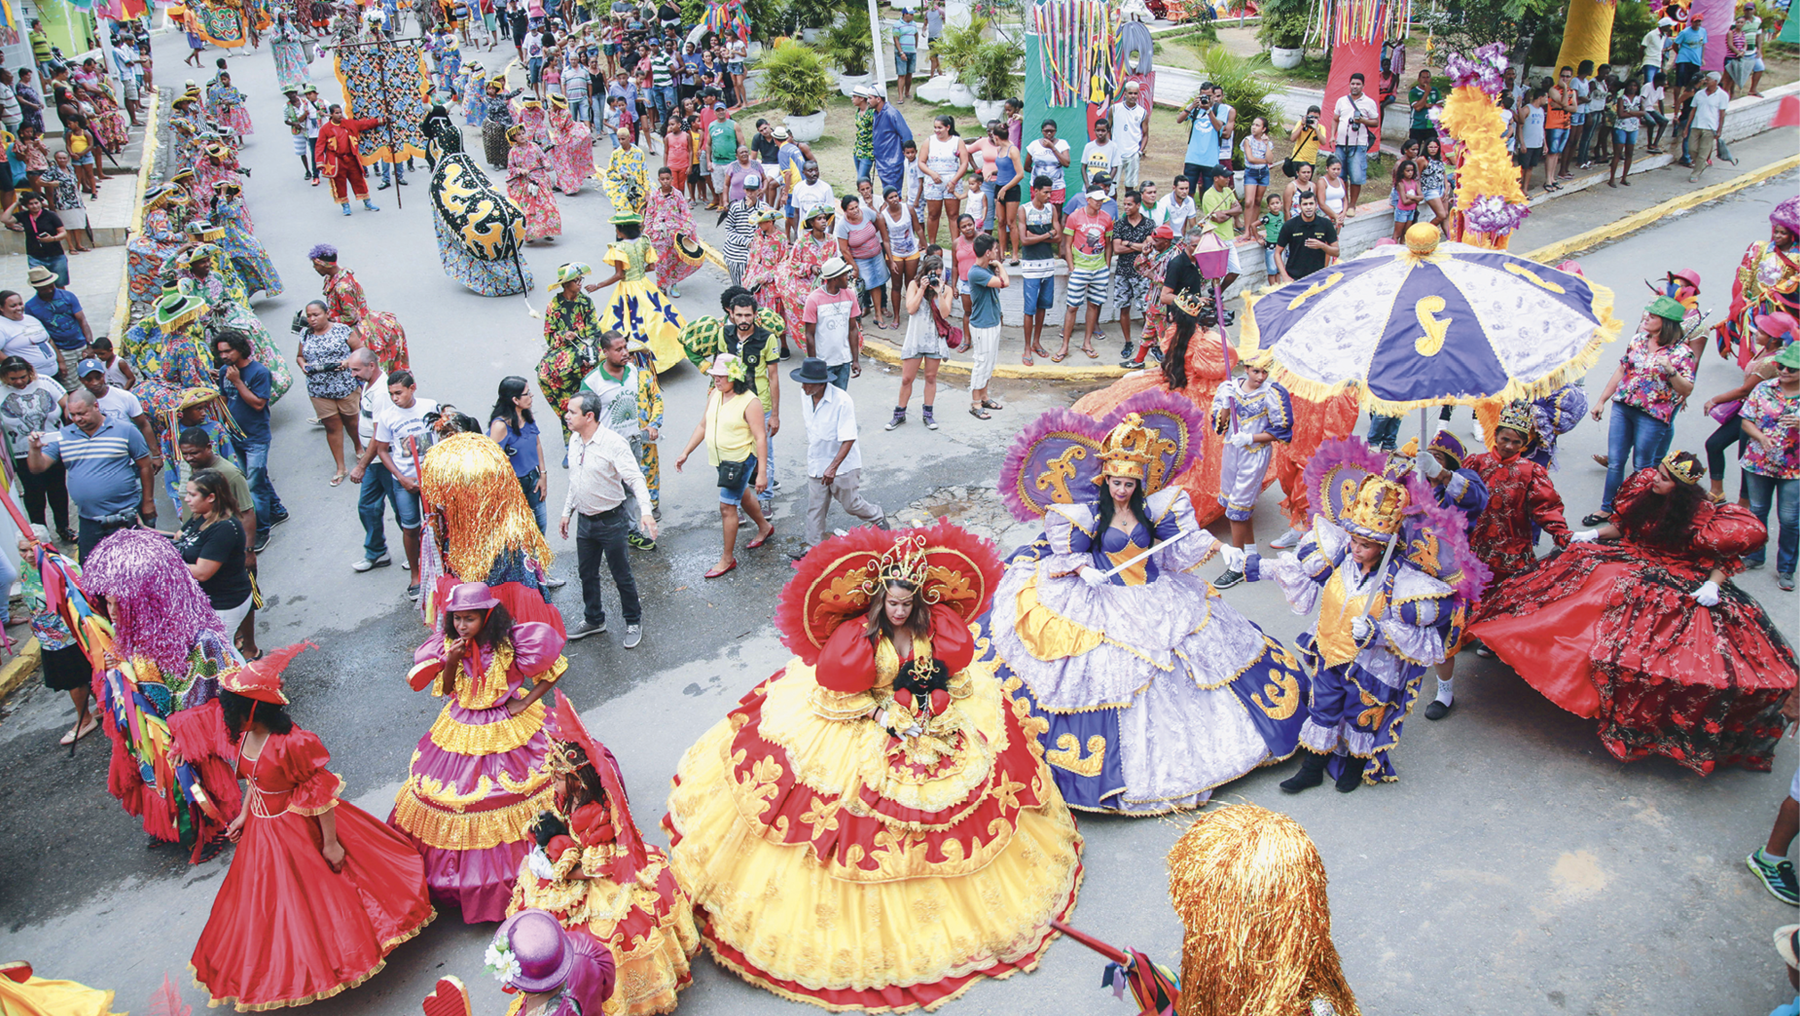 Fotografia. No primeiro plano, vista para um cruzamento de ruas ocupado por um desfile de mulheres de vestidos compridos e rodados, fantasias e adereços coloridos. No segundo plano, diversas pessoas assistem ao desfile nas calçadas.